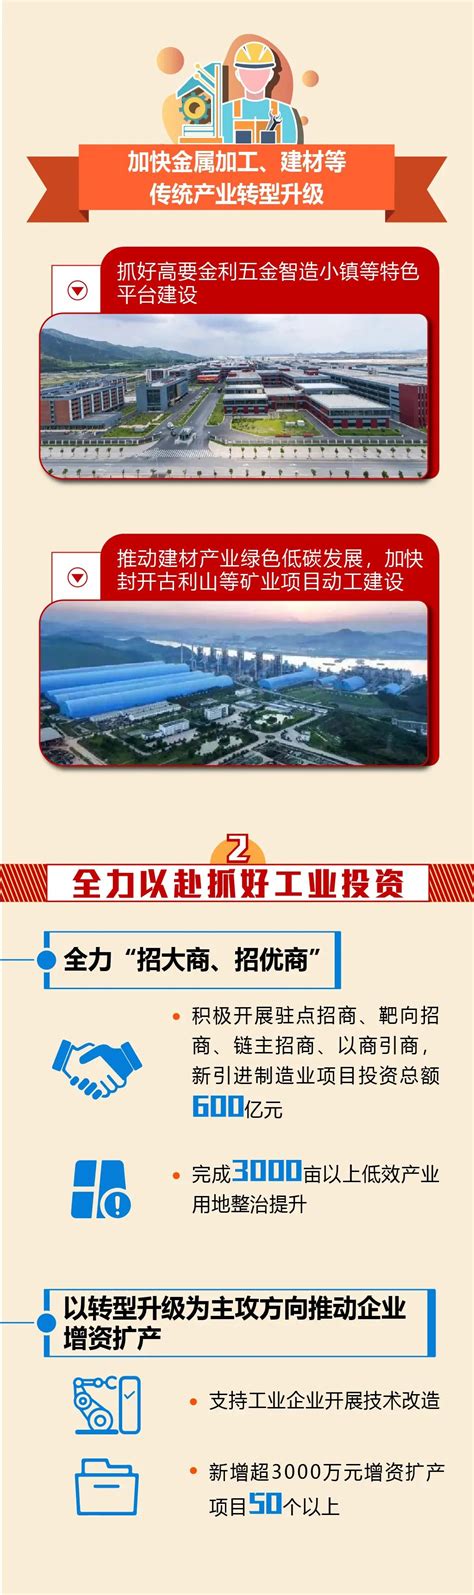 【肇庆】肇庆两大文旅项目正式签约 全市新增供应环比大幅上升_房产资讯_房天下